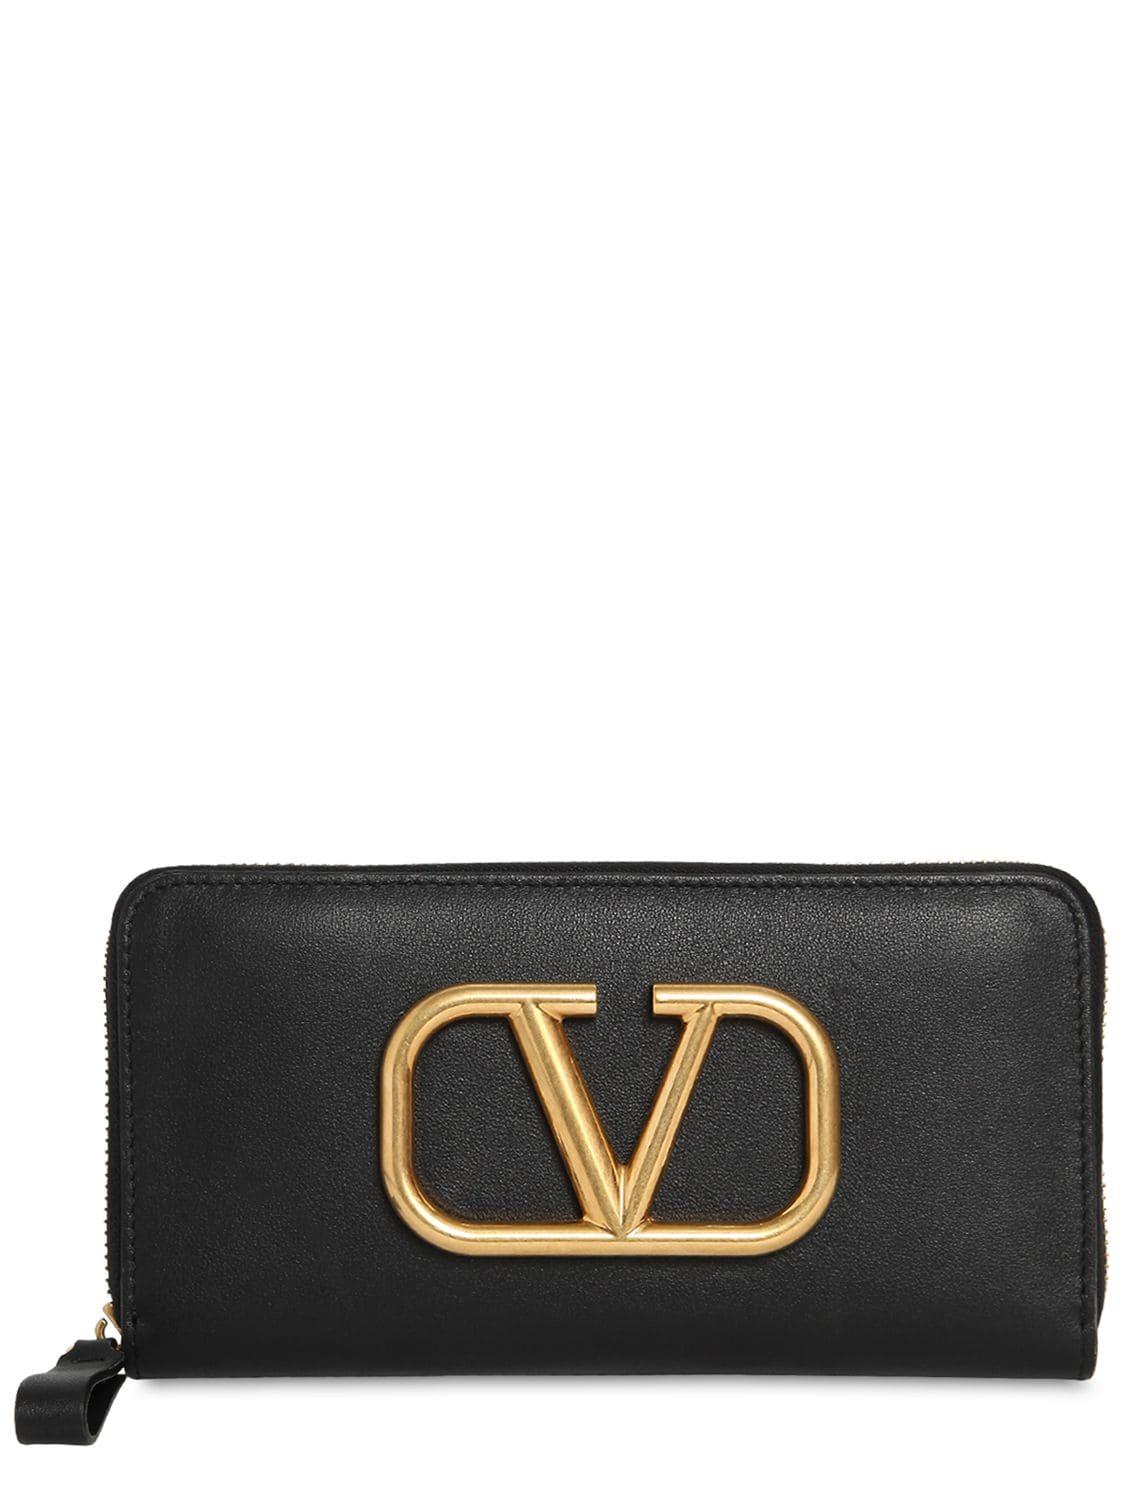 Valentino Vlogo Leather Zip Around Wallet in Black - Lyst